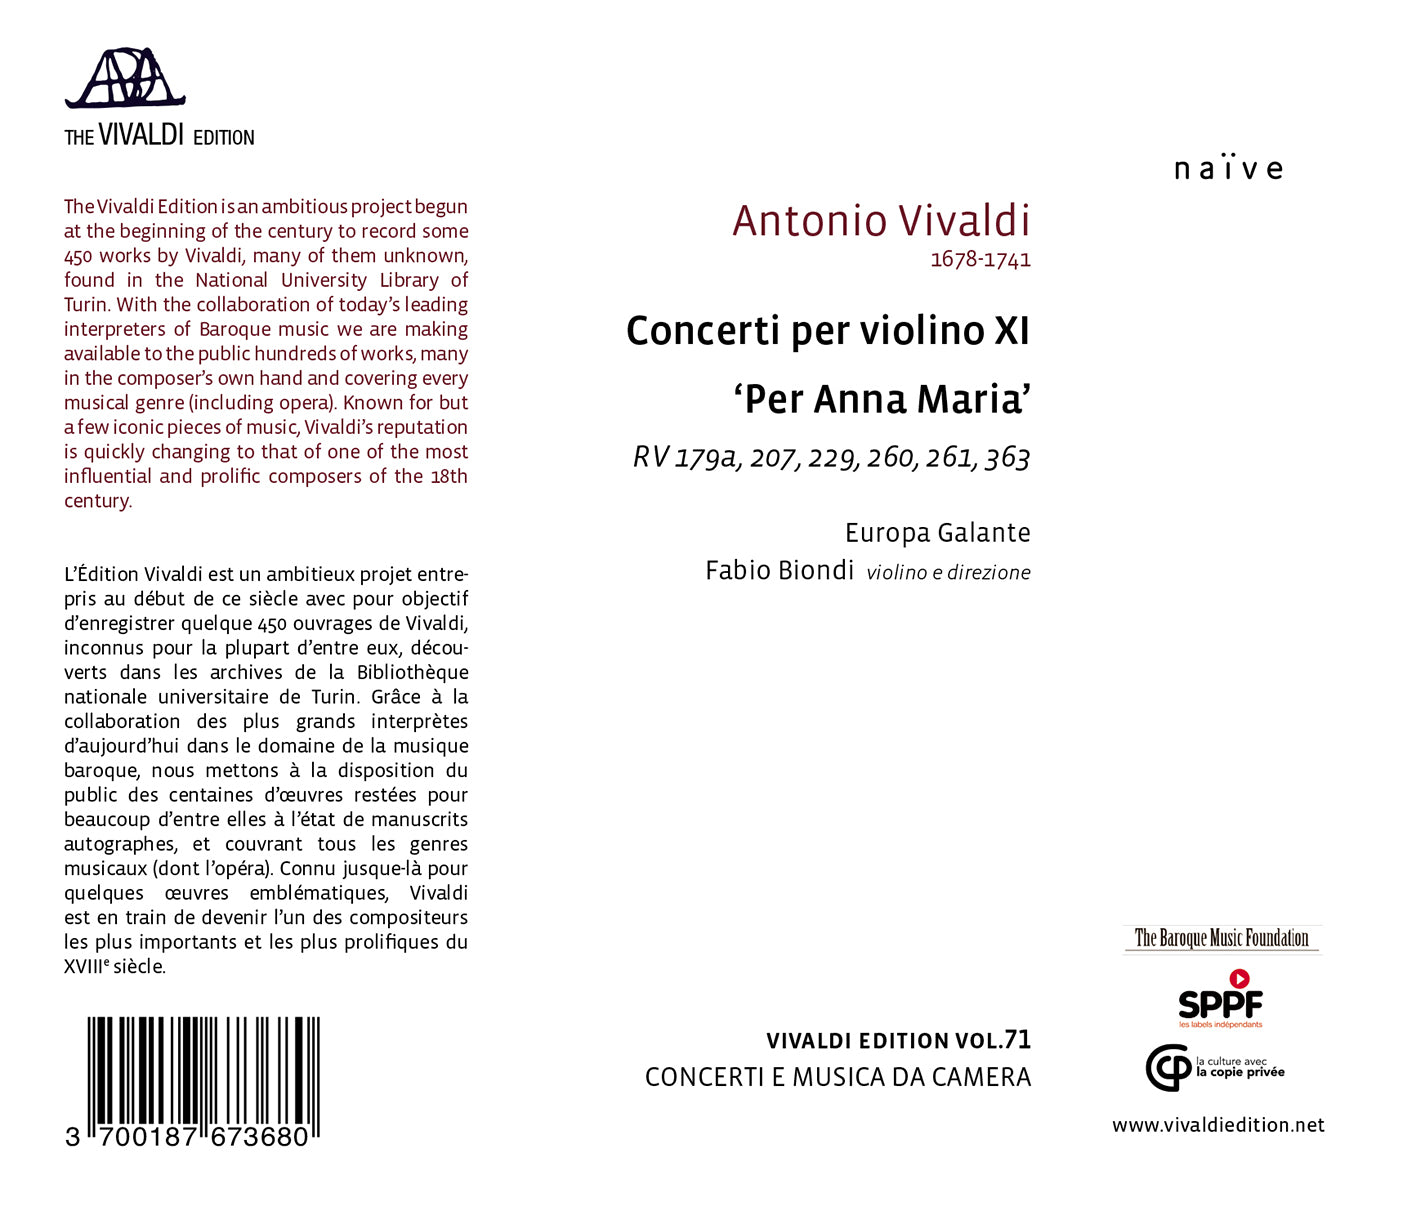 Vivaldi: Concerti per violino XI